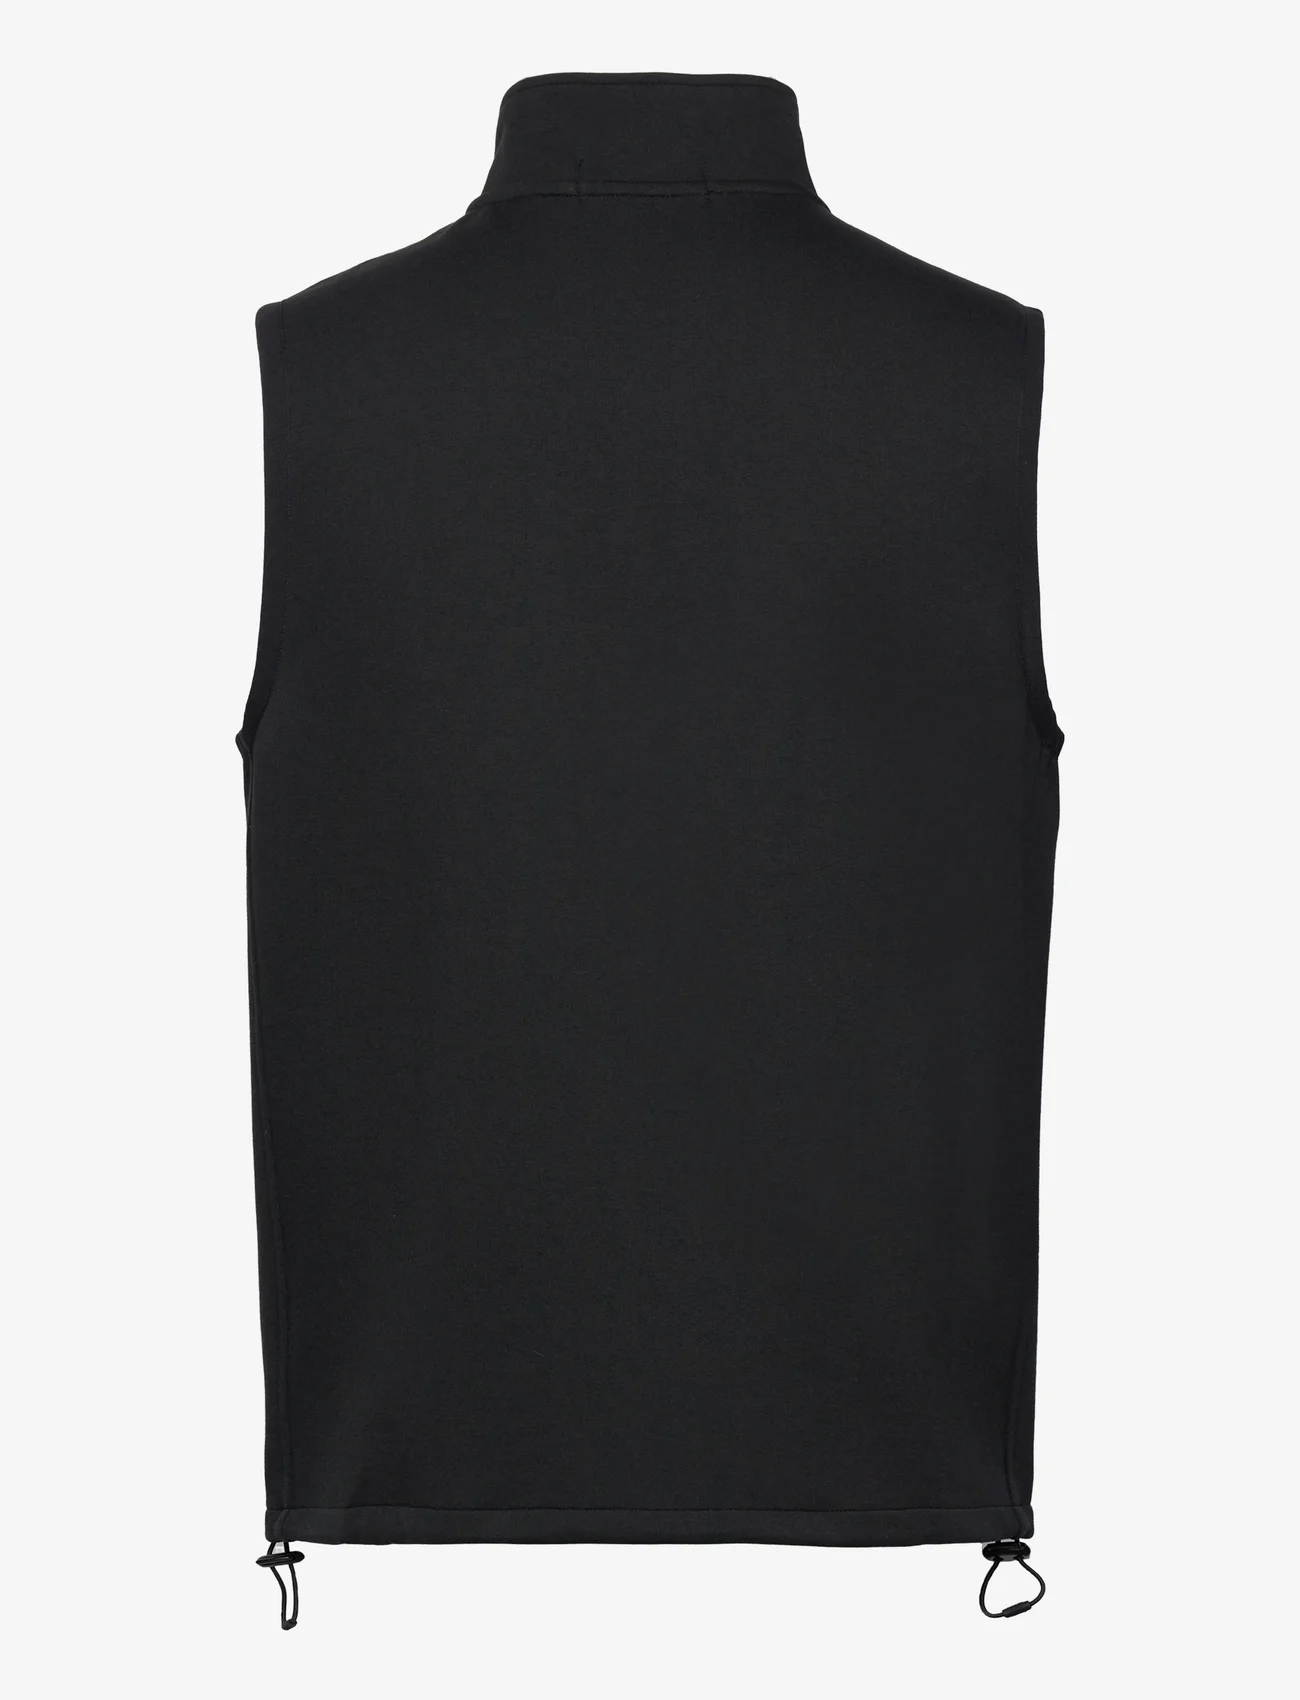 Polo Ralph Lauren - Double-Knit Vest - adītas vestes - polo black - 1